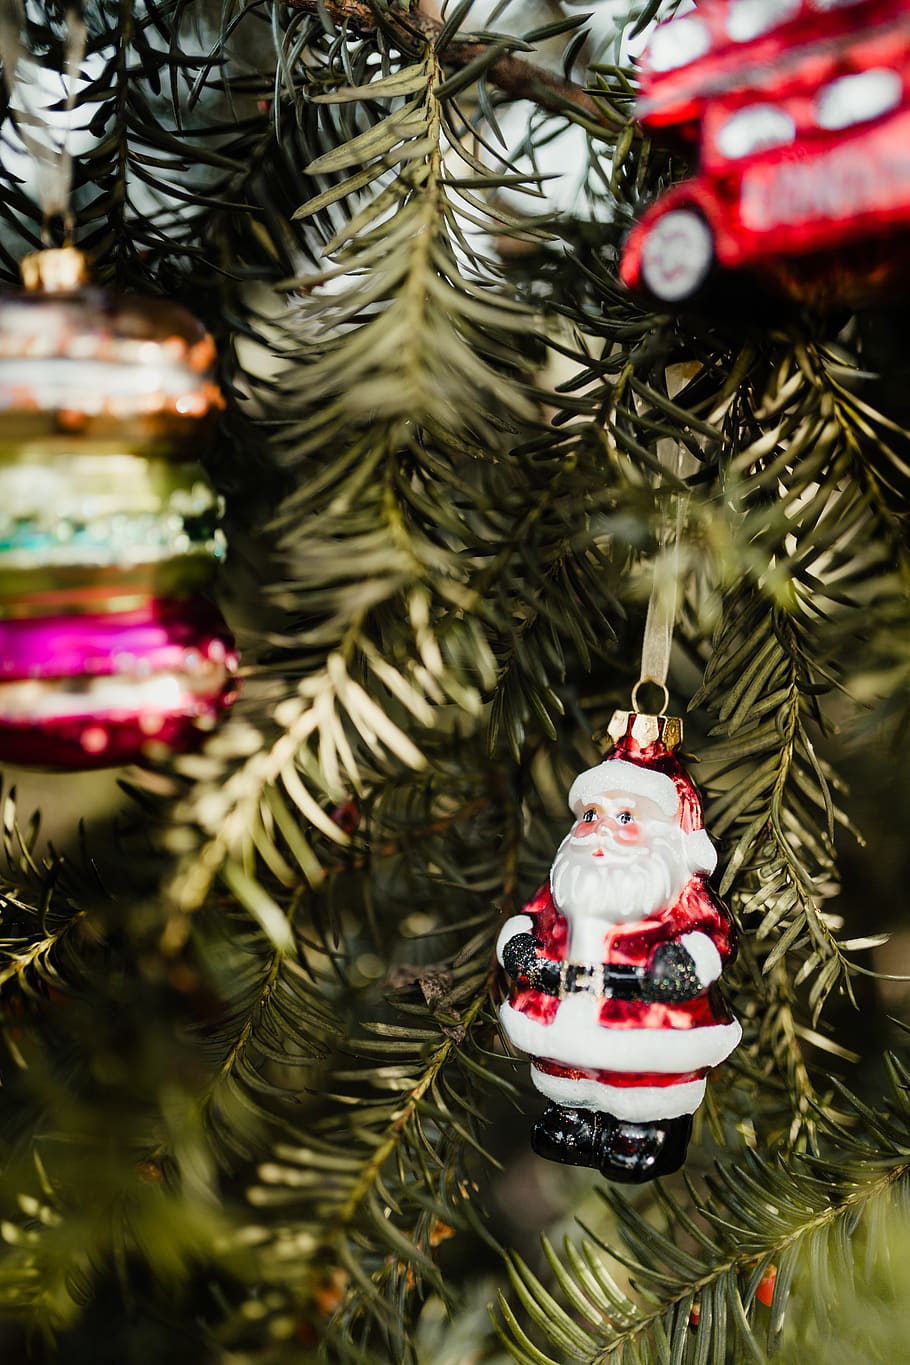 Bolas de navidad, decoraciones, navidad, árbol de navidad, diciembre, divertido, árbol, celebración, decoración navideña, decoración